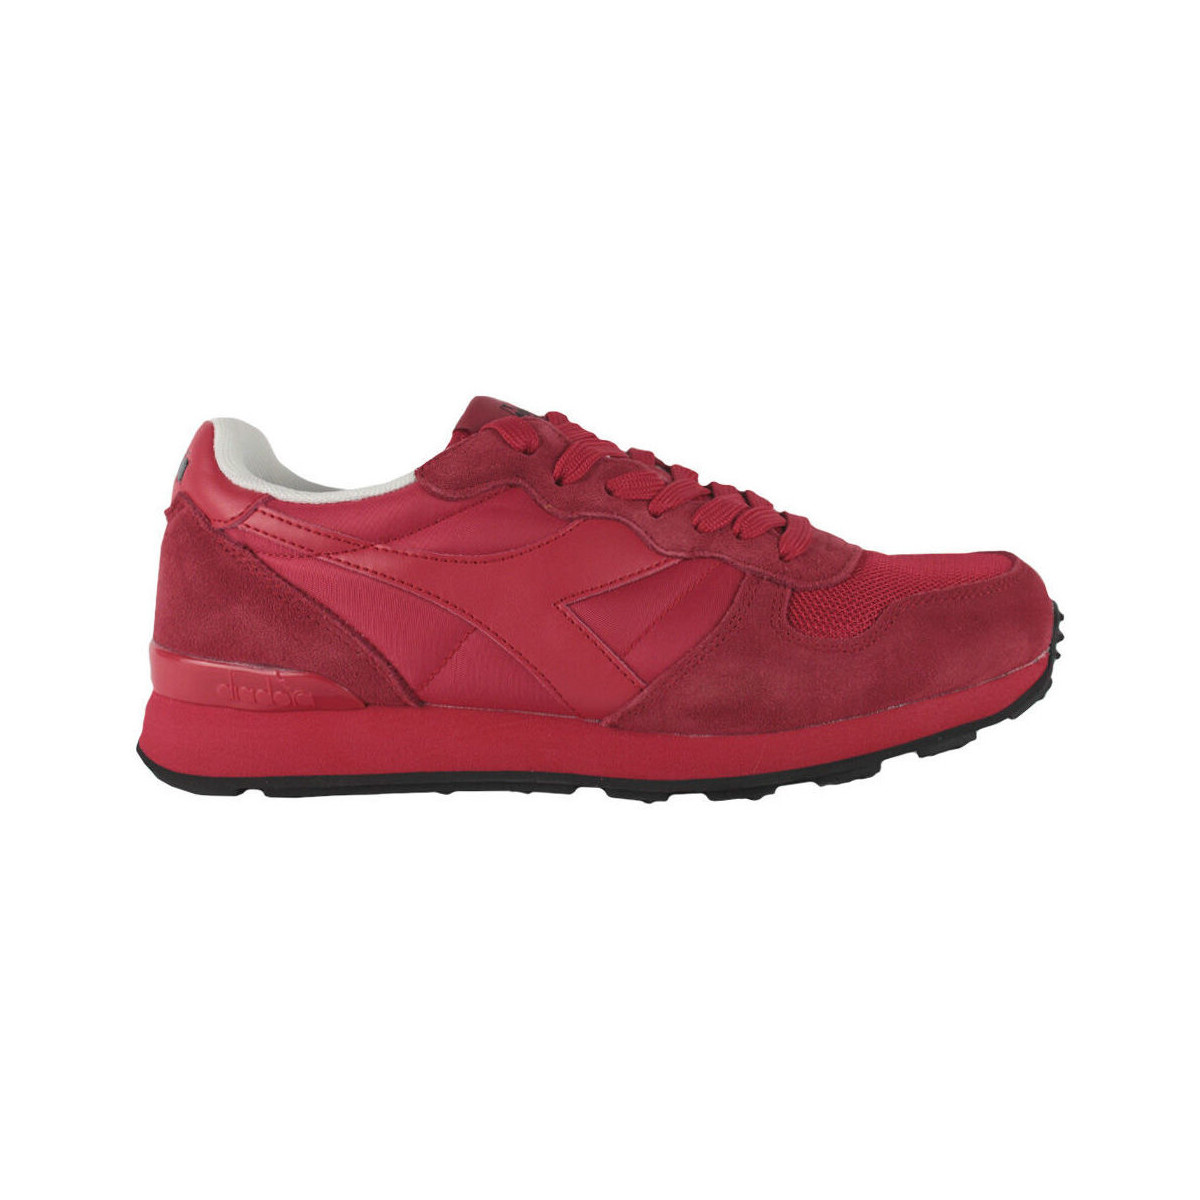 Παπούτσια Άνδρας Sneakers Diadora 501.178562 01 45028 Poppy red Red